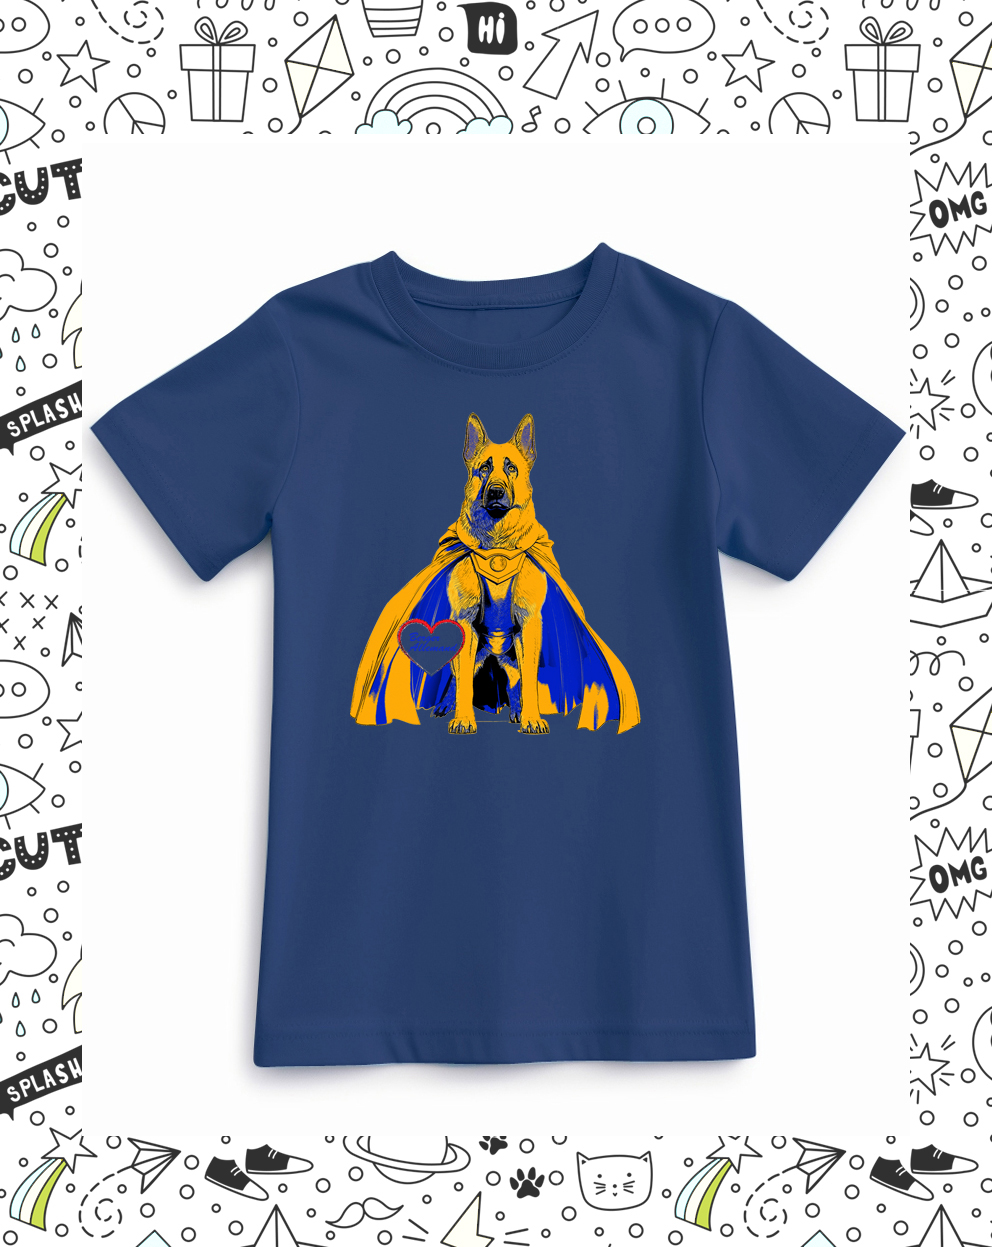 t-shirt enfant bleu marine motif berger allemand